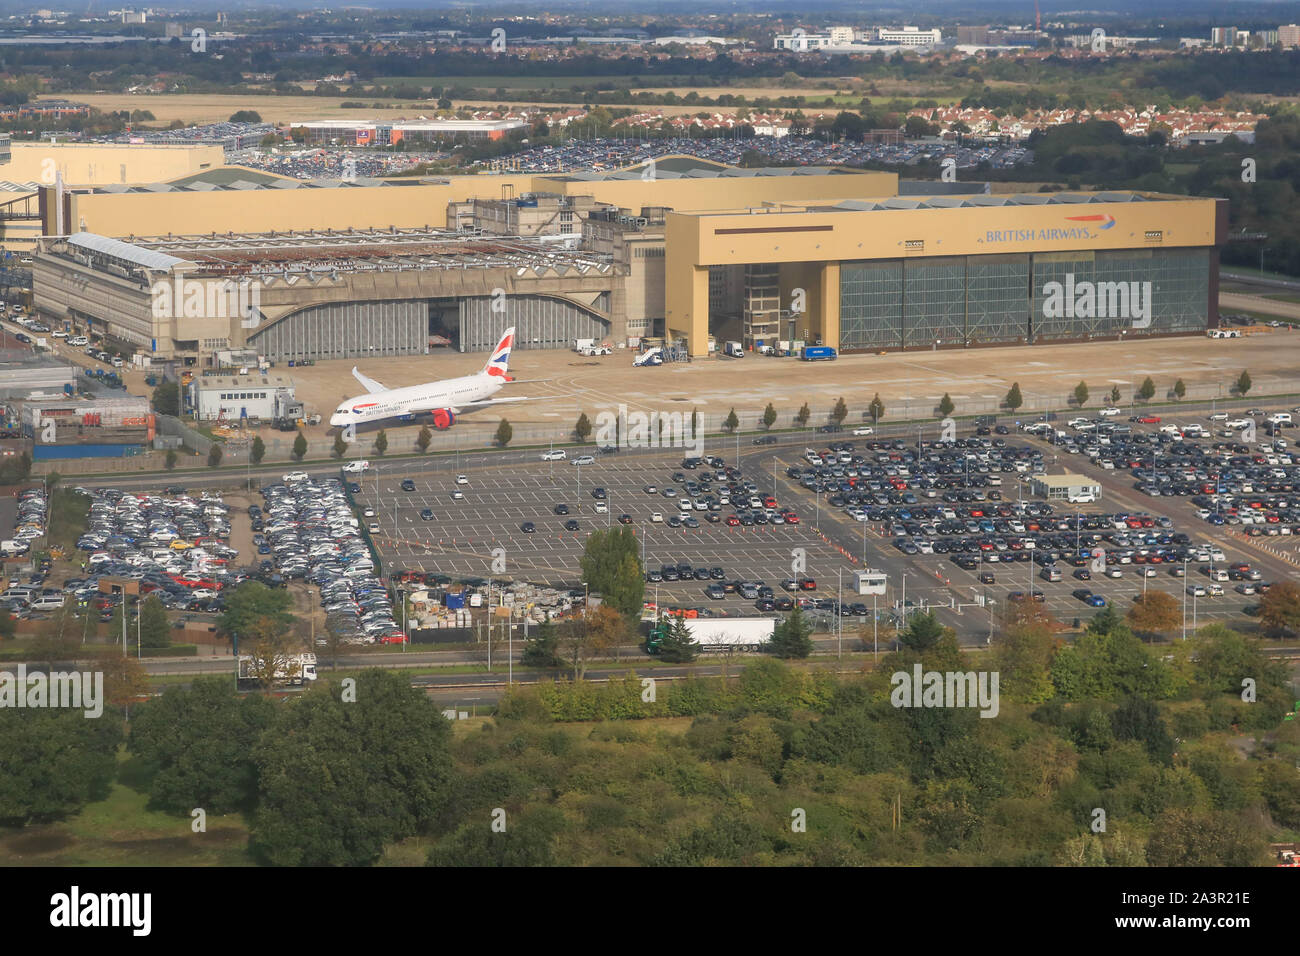 Un elevato angolo di visione del parco vetture accanto al British Airways hangar presso l'aeroporto di Heathrow. Foto Stock